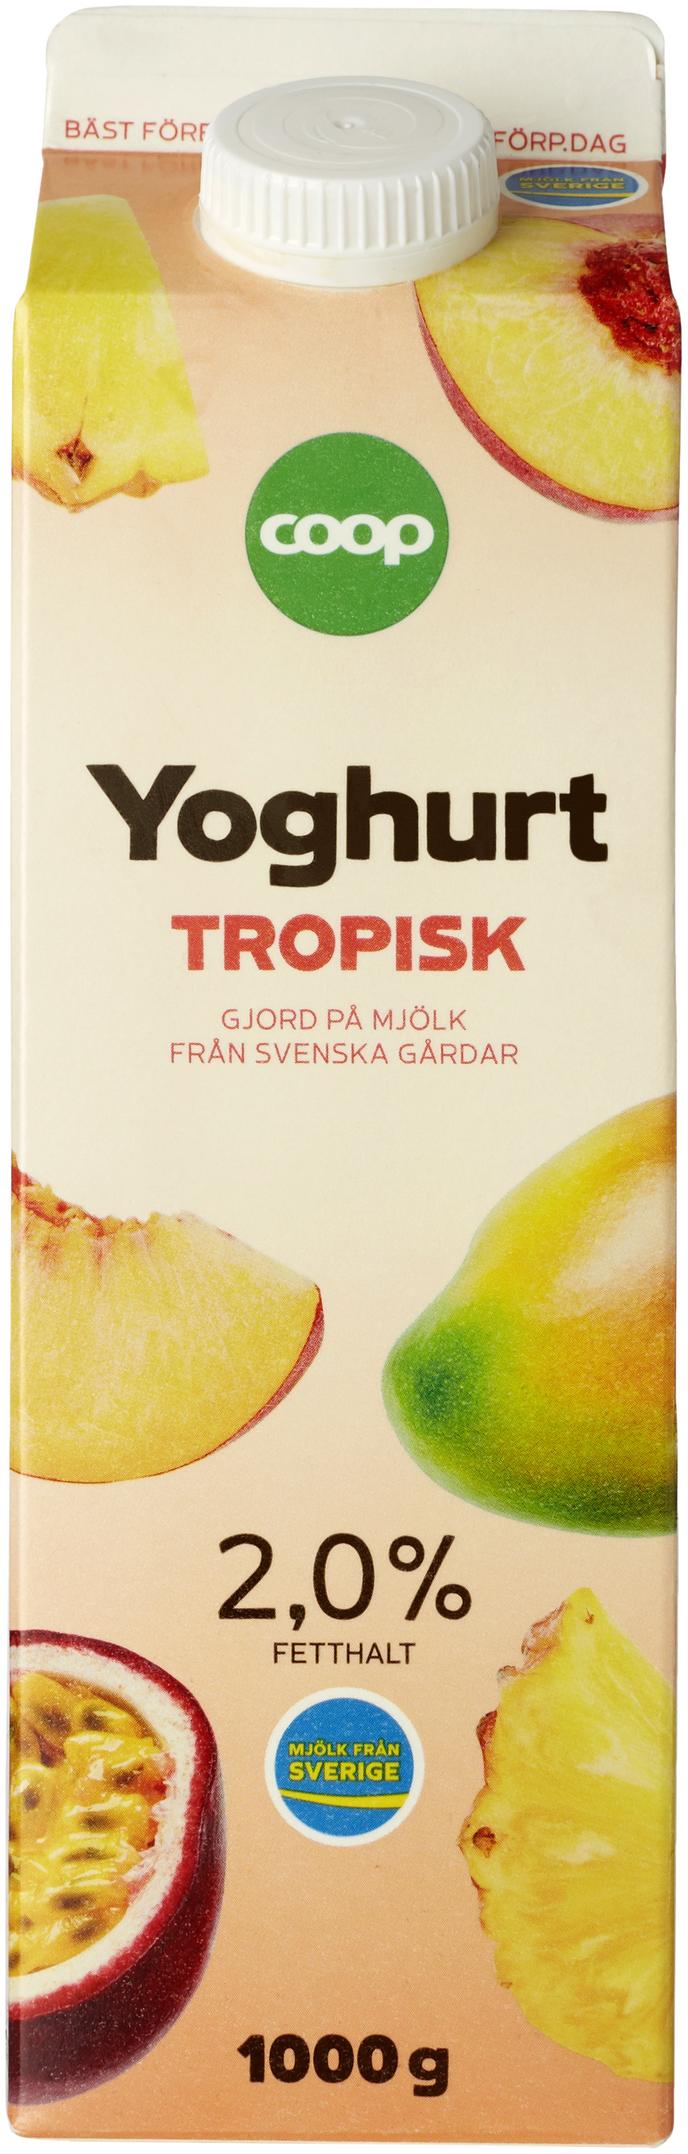 Yoghurt Tropisk för 22,95 kr på Coop